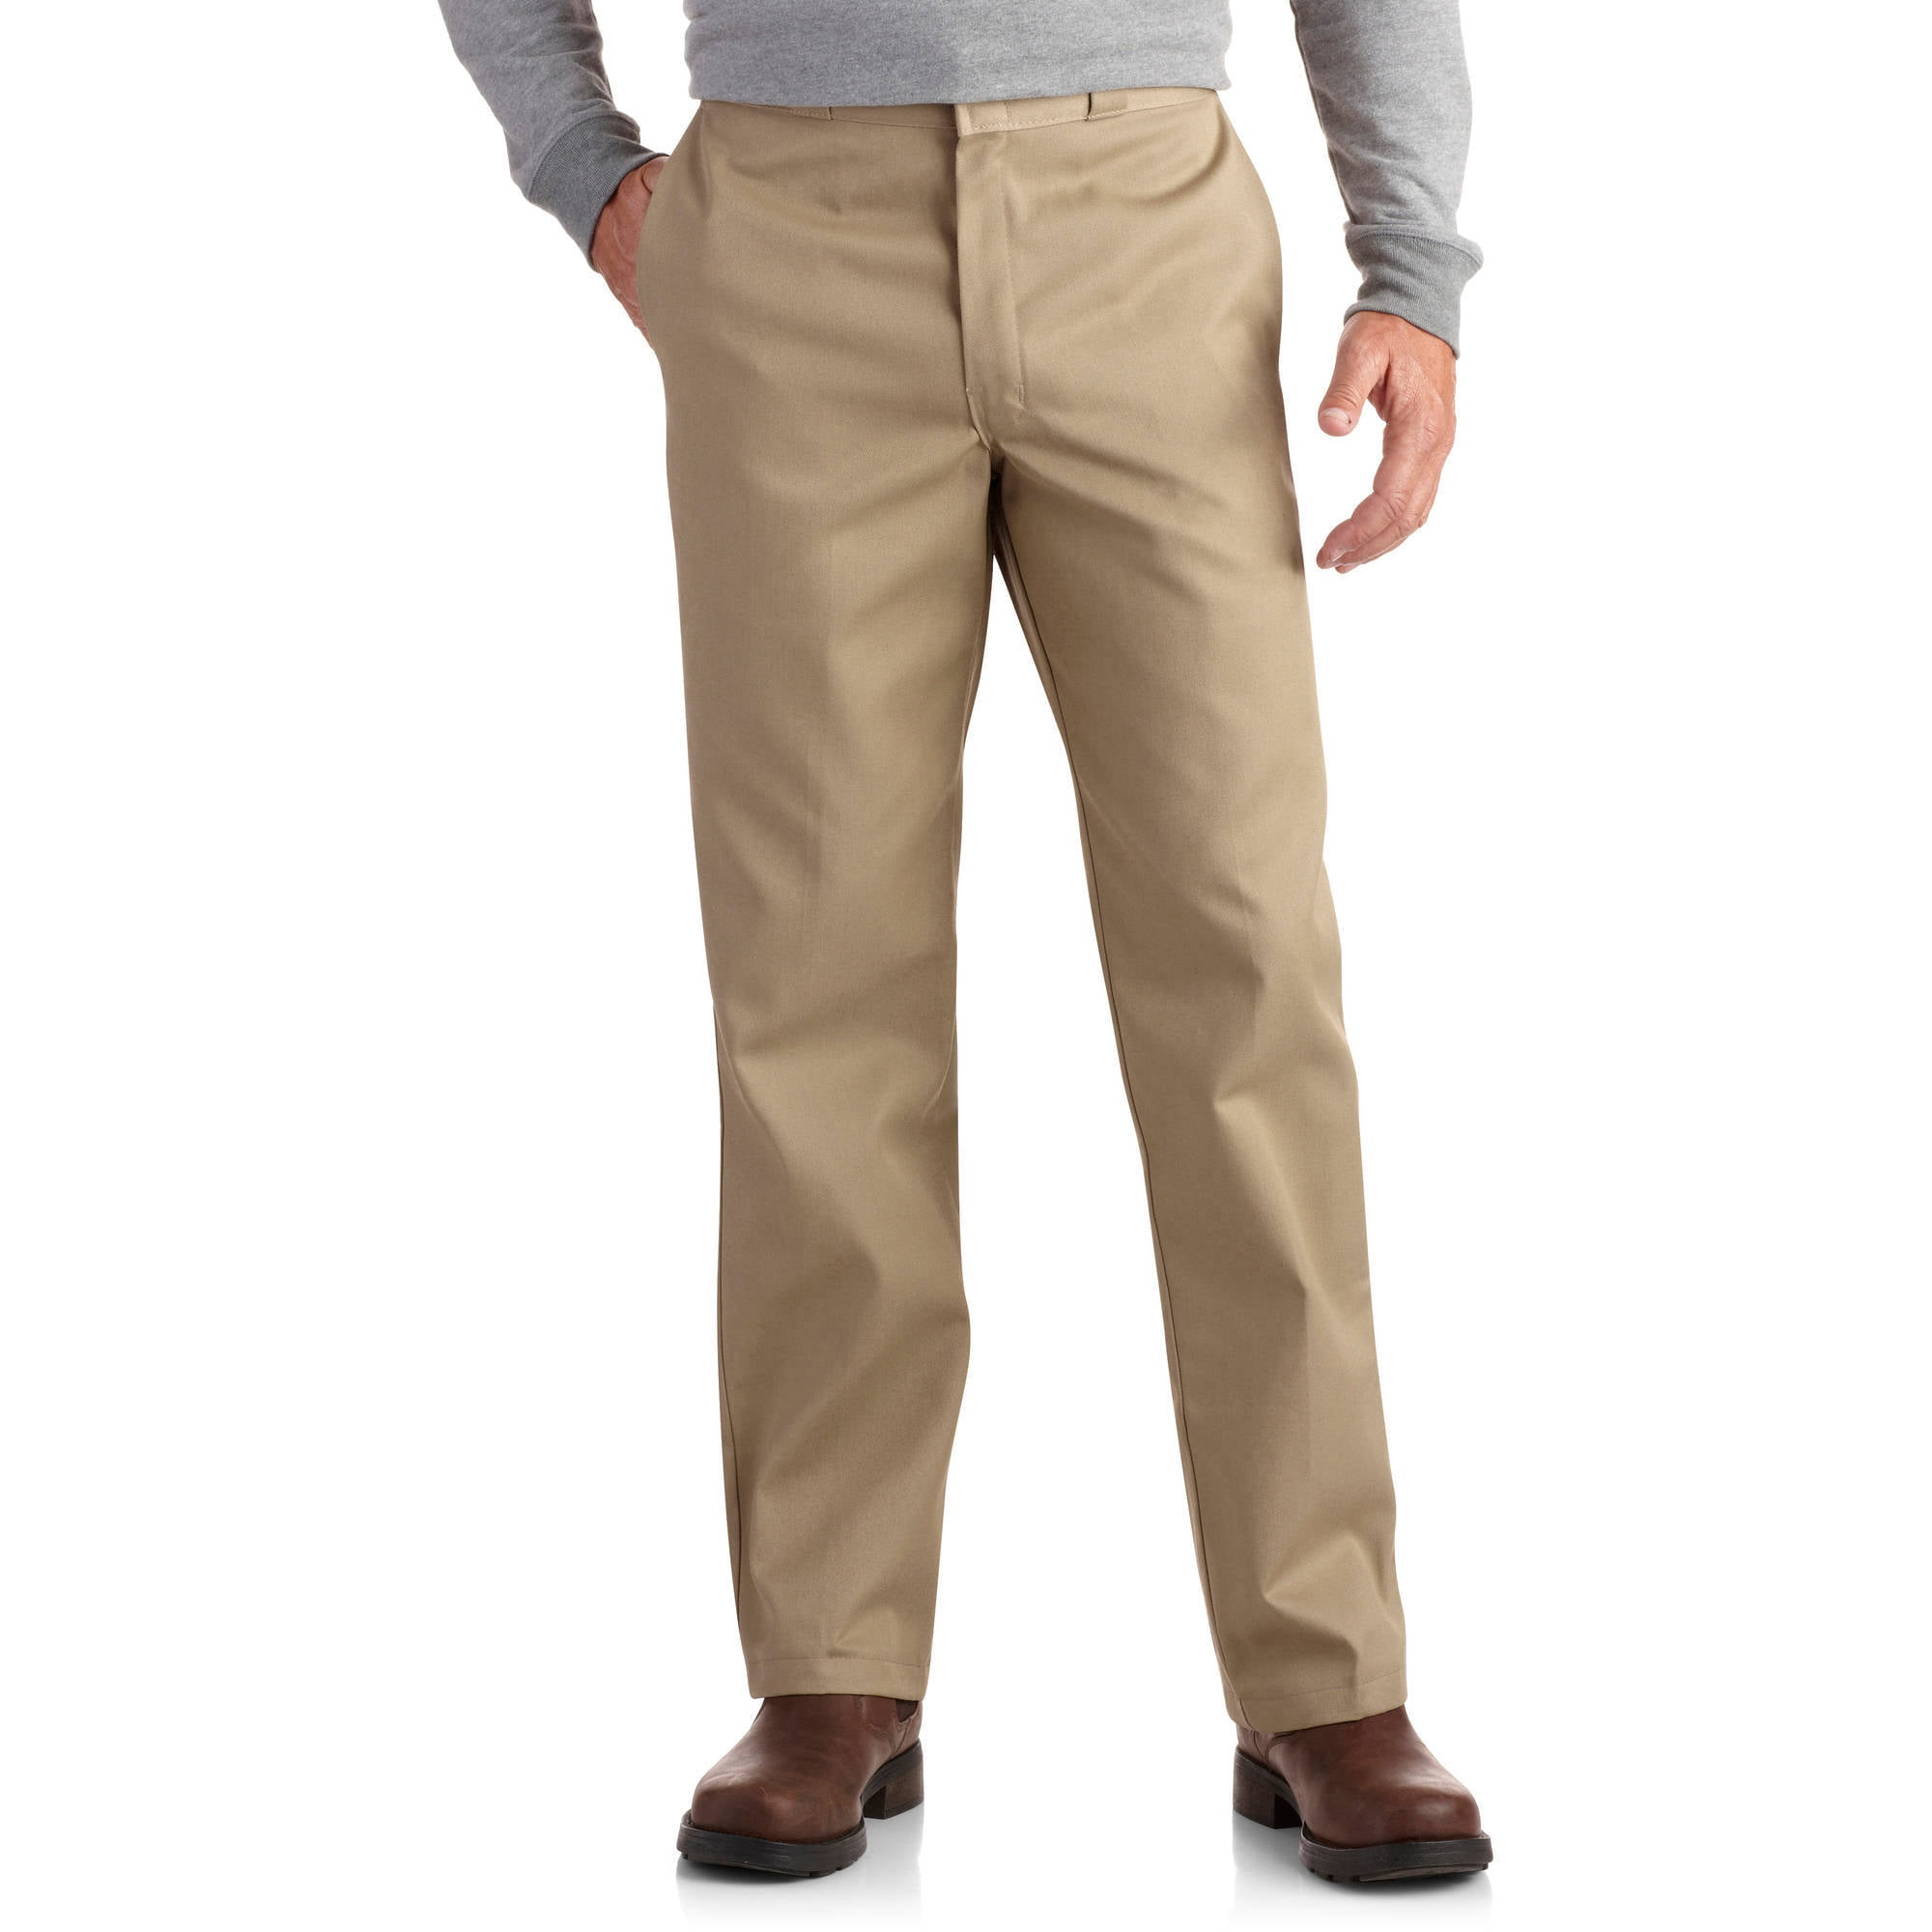 George Men's Premium Pleat Front Khaki Pants - Walmart.com